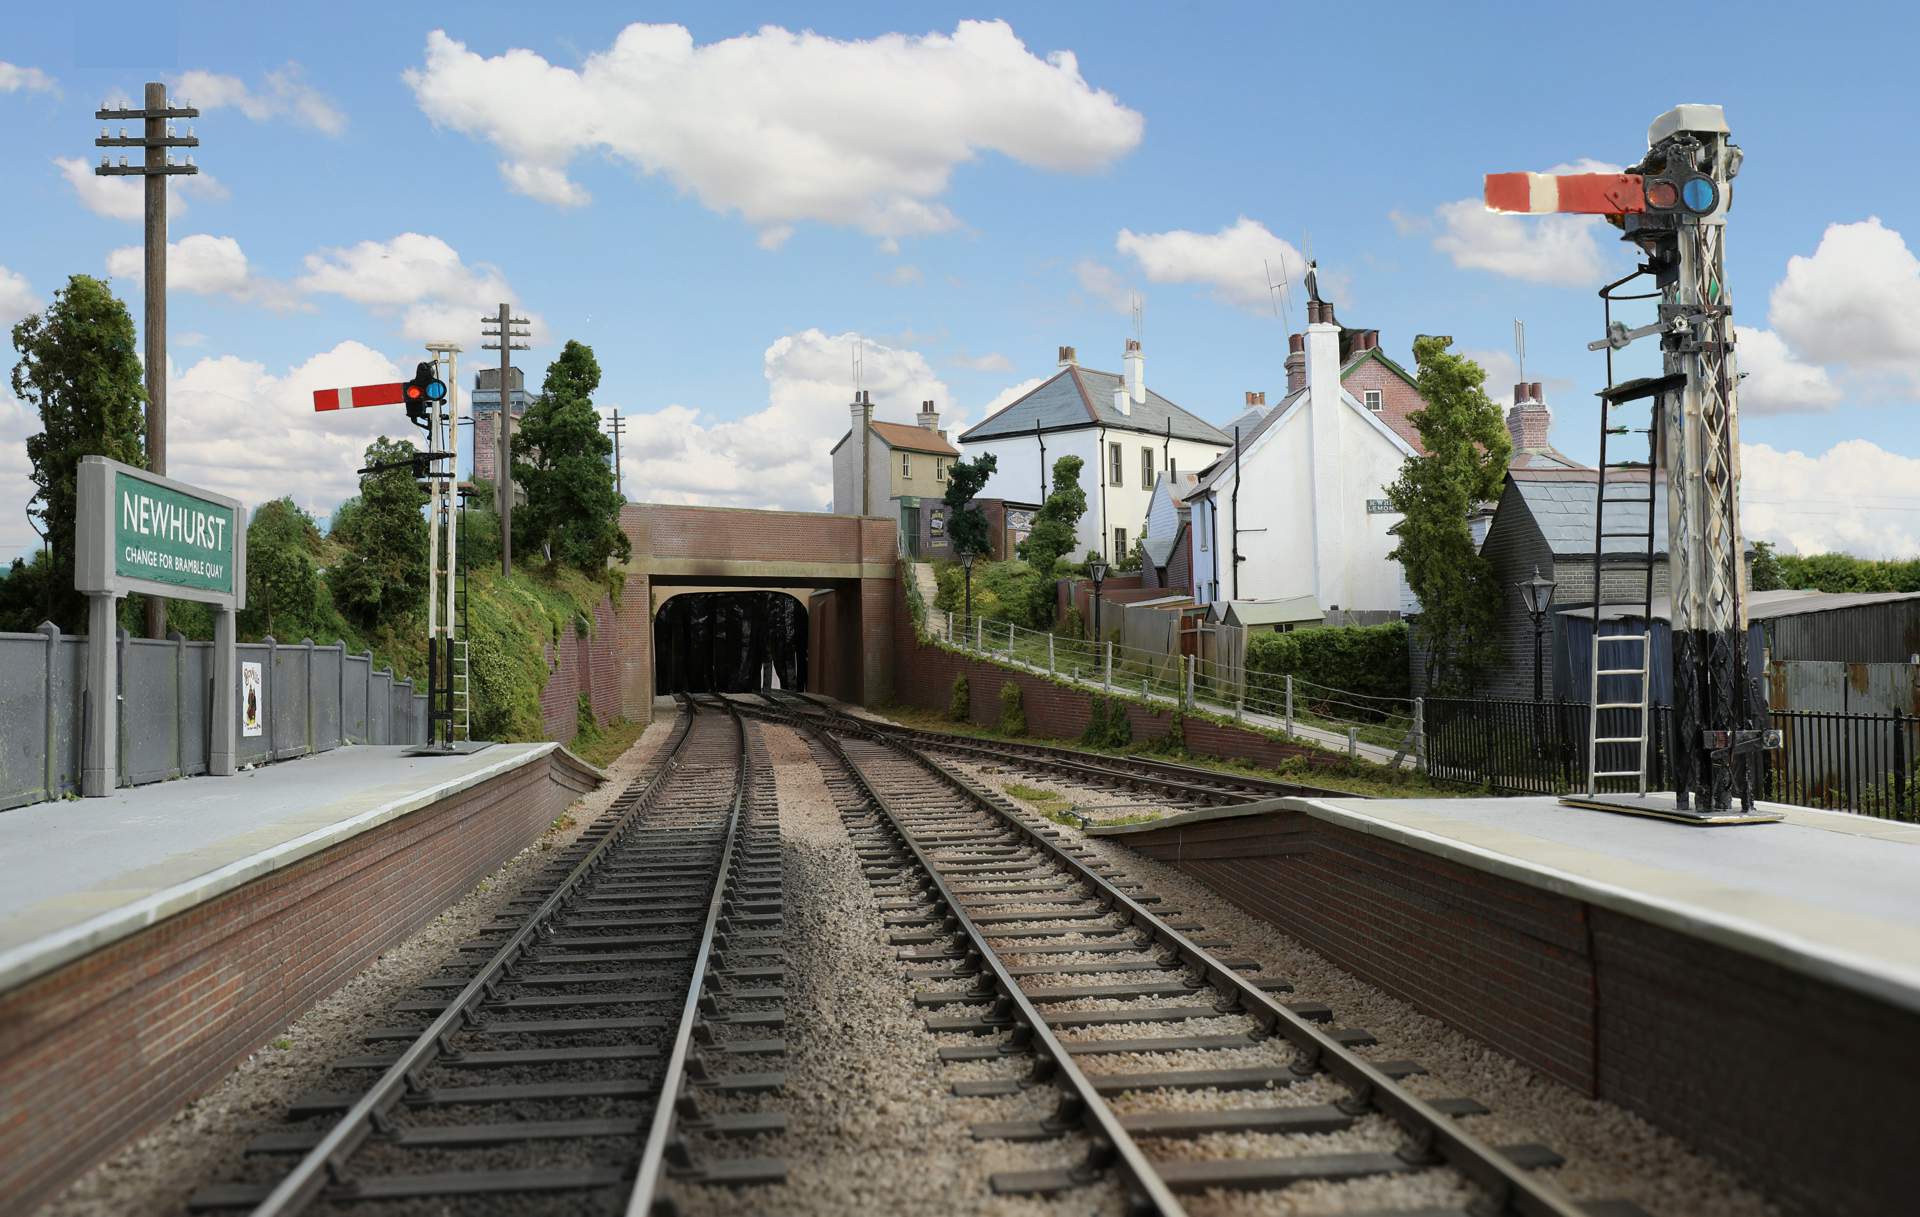 Newhurst Station